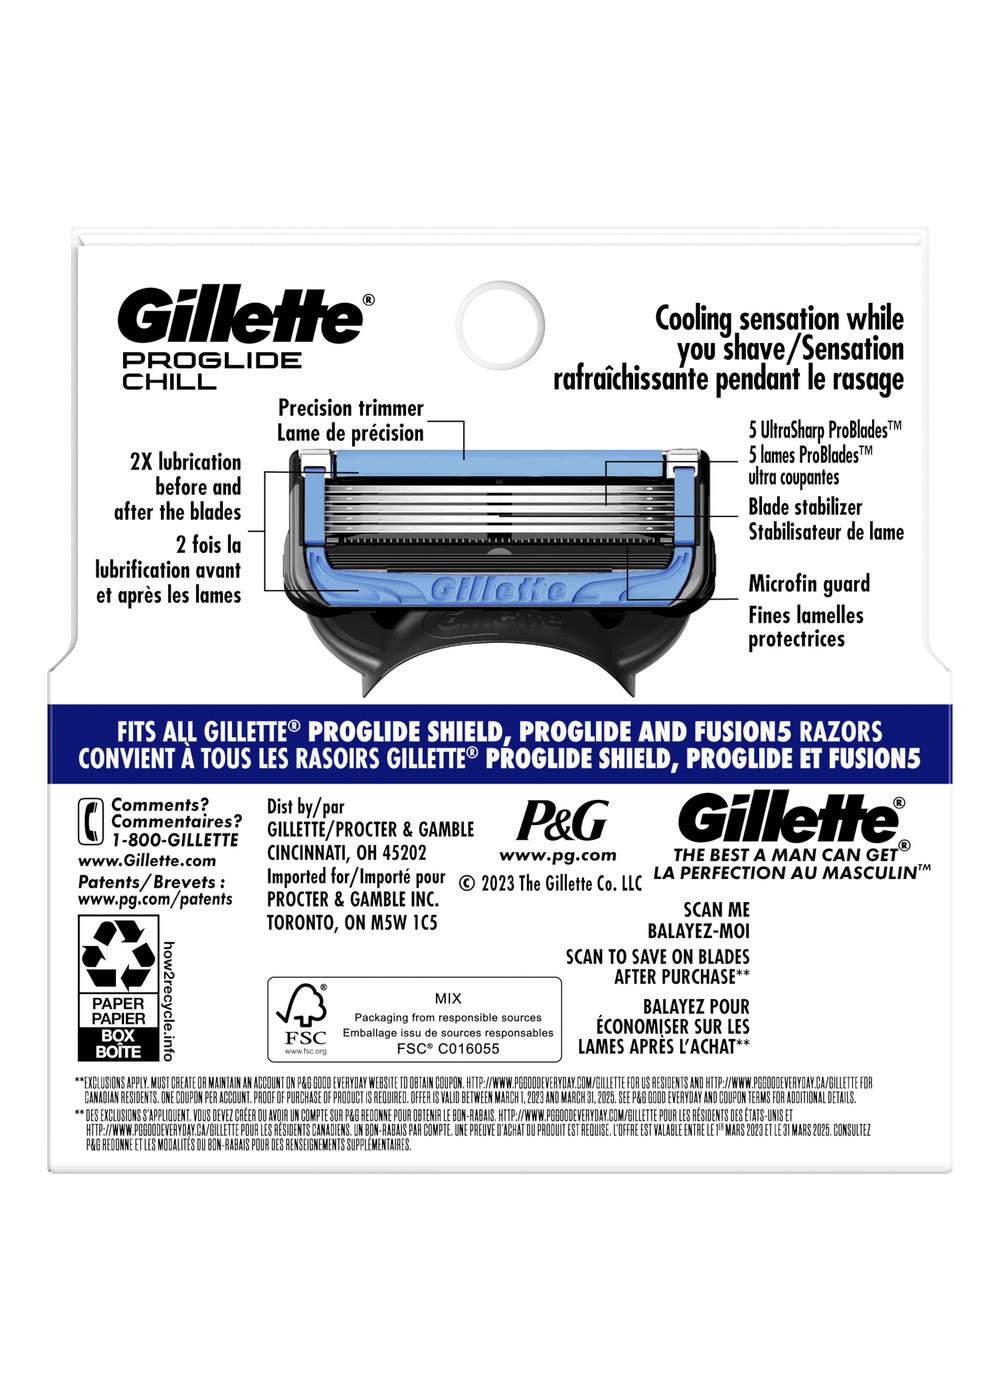 Gillette ProGlide Chill Razor Blade Refills; image 10 of 10